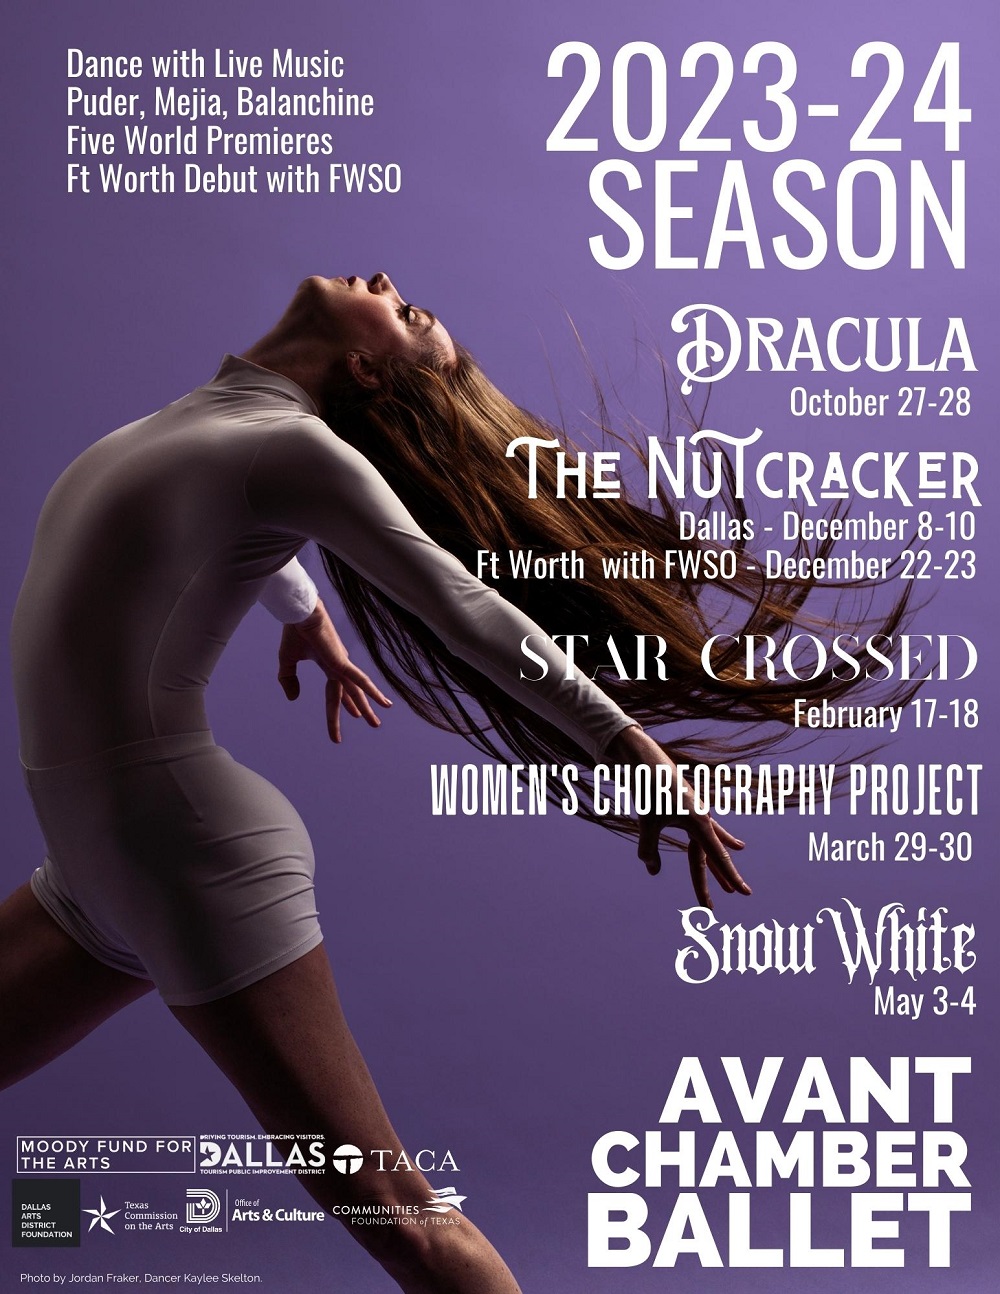 Avant Chamber Ballet 2023-24 Season